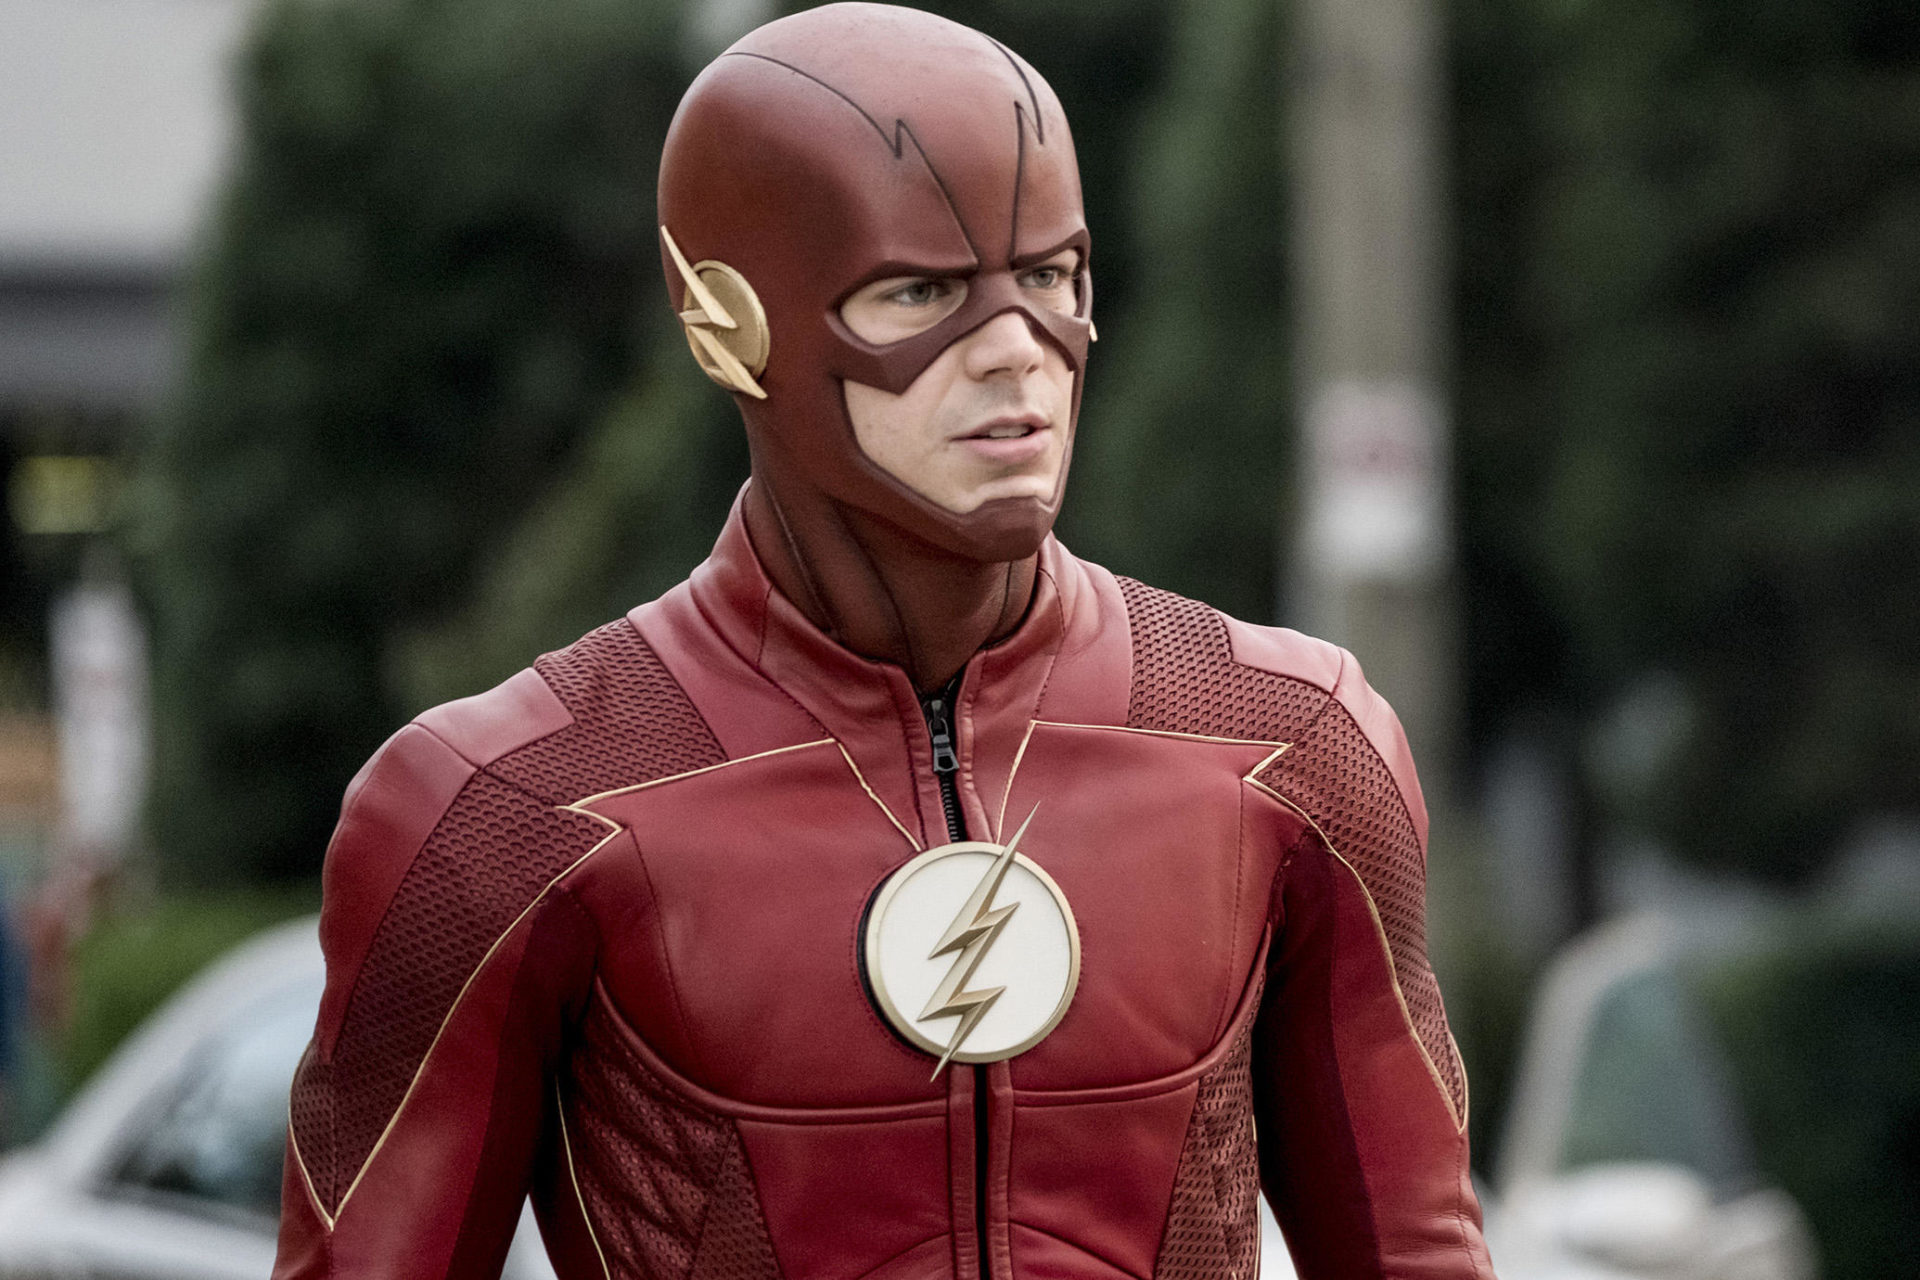 The Flash e Supergirl terão menos cenas de ação por causa do coronavírus